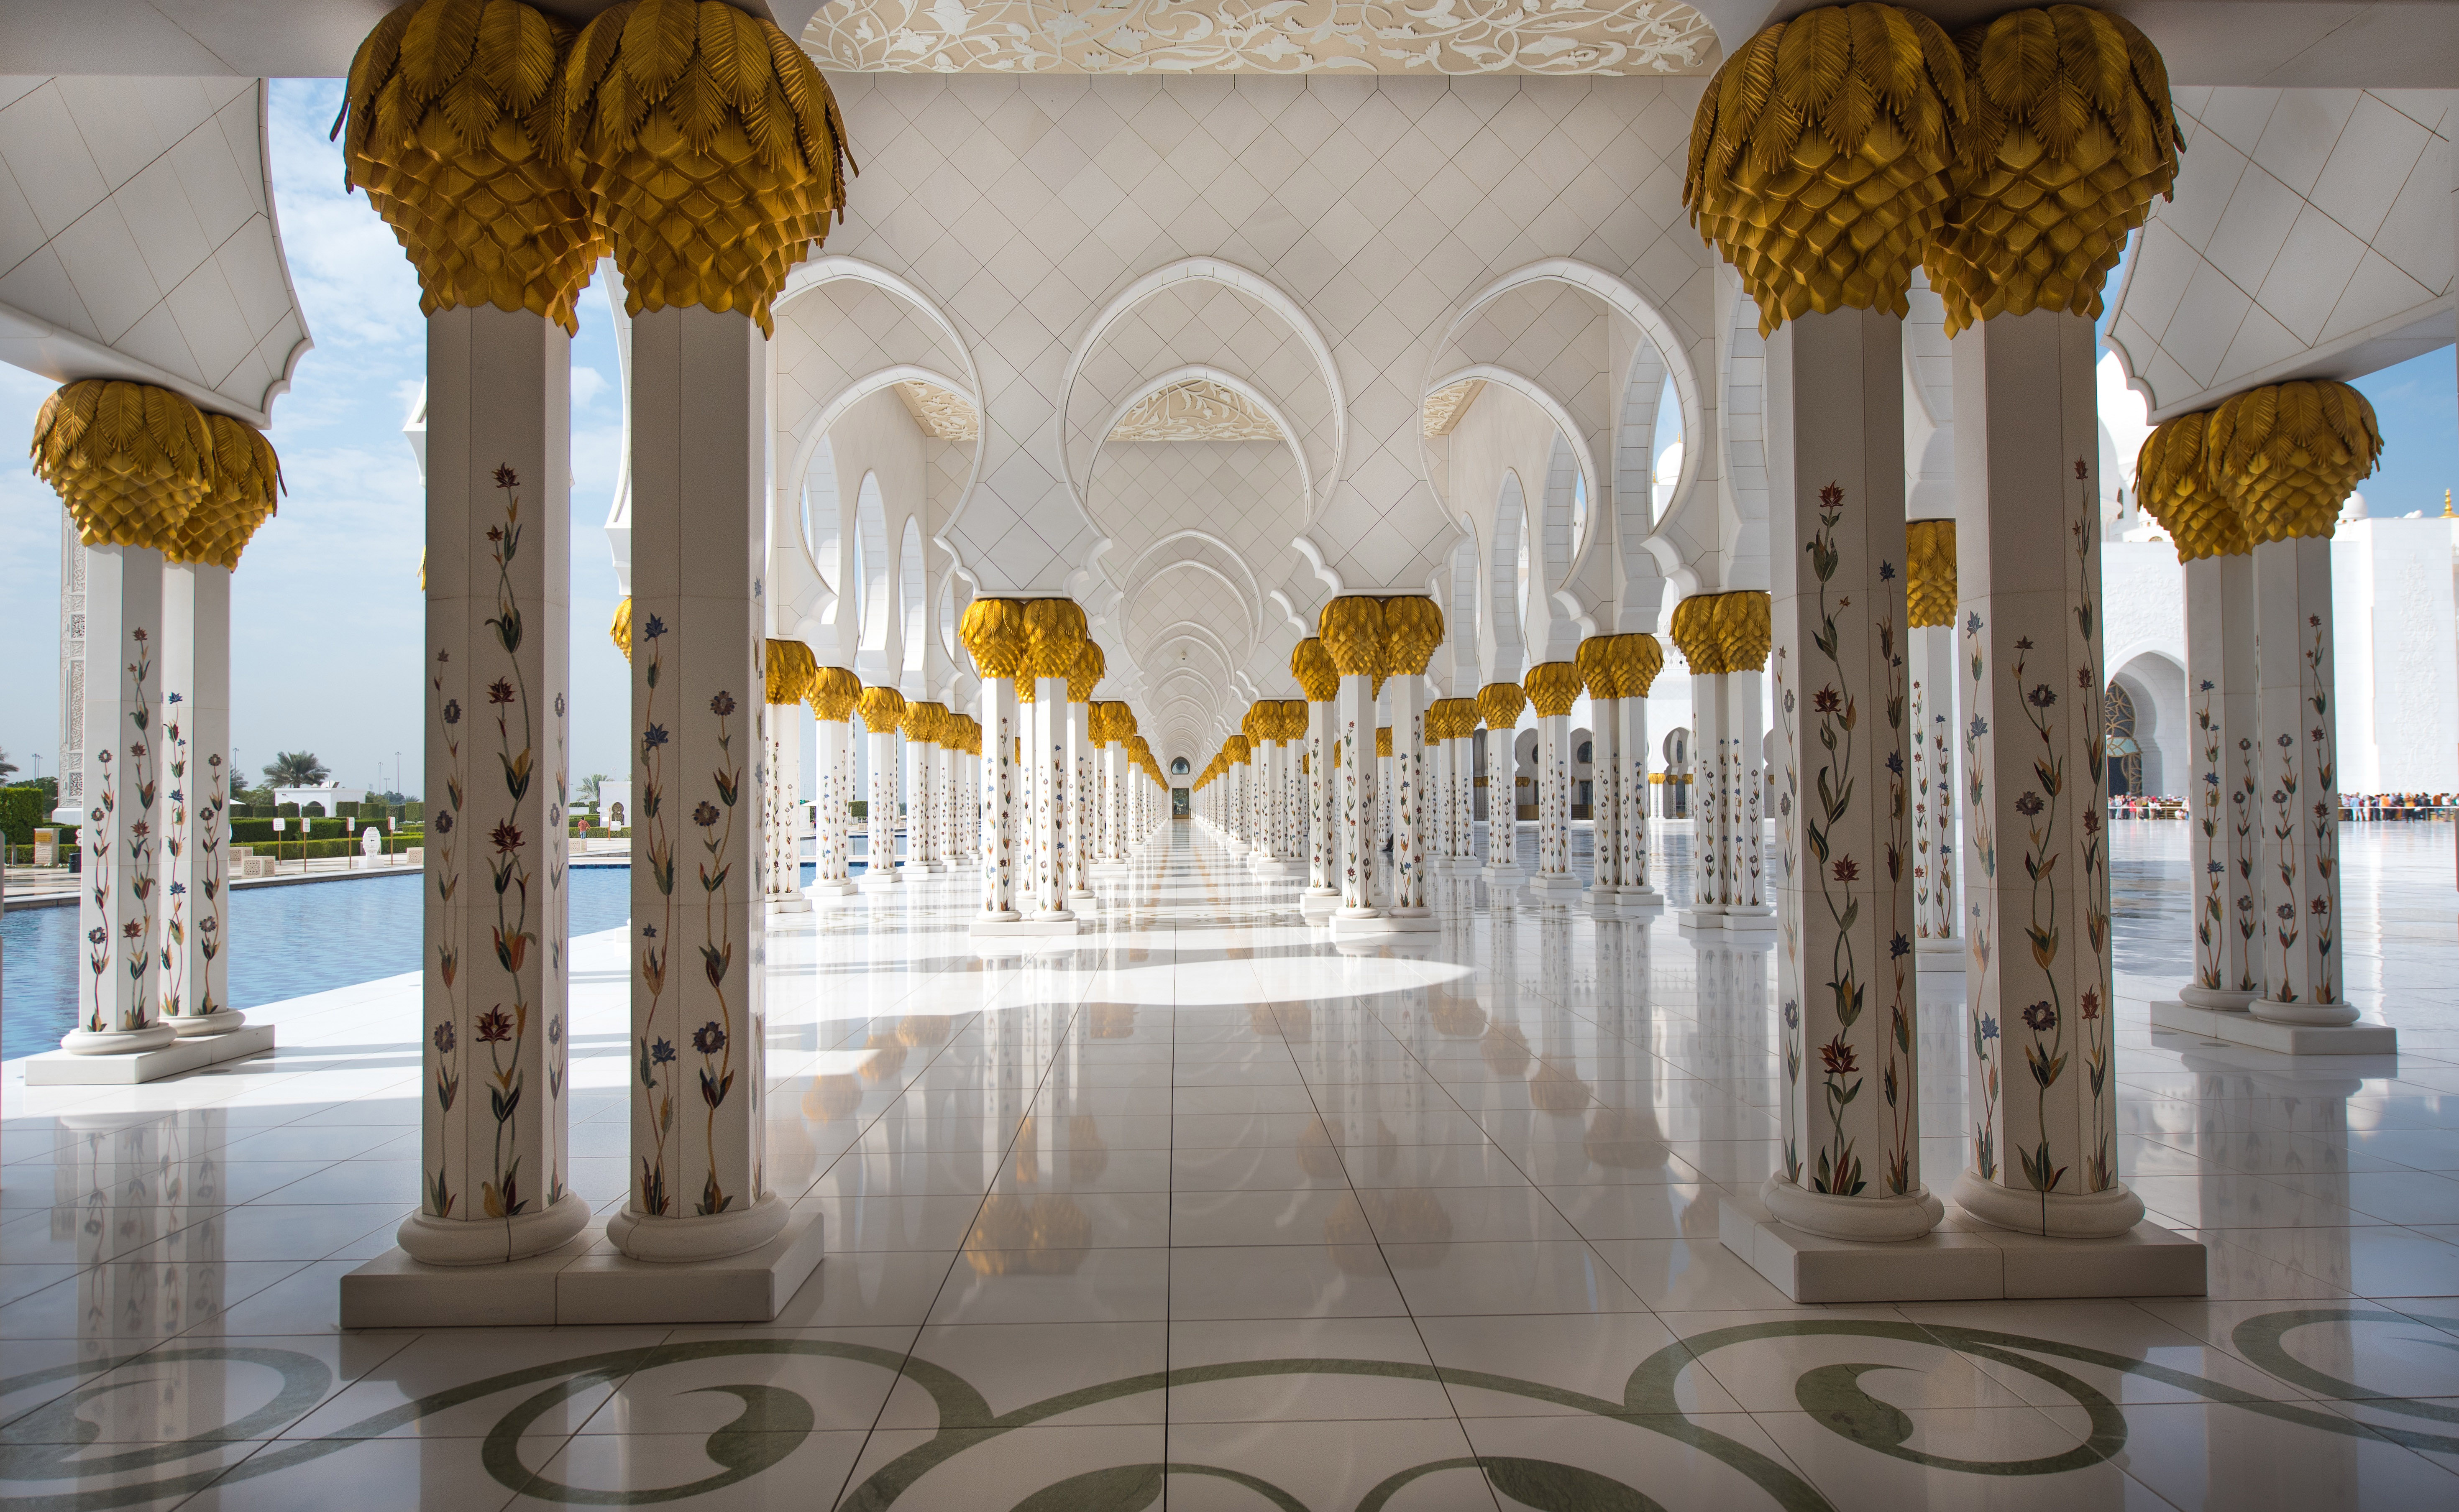 Palace Hotel at Abu Dhabi, United Arab Emirates, UAE image - Free stock